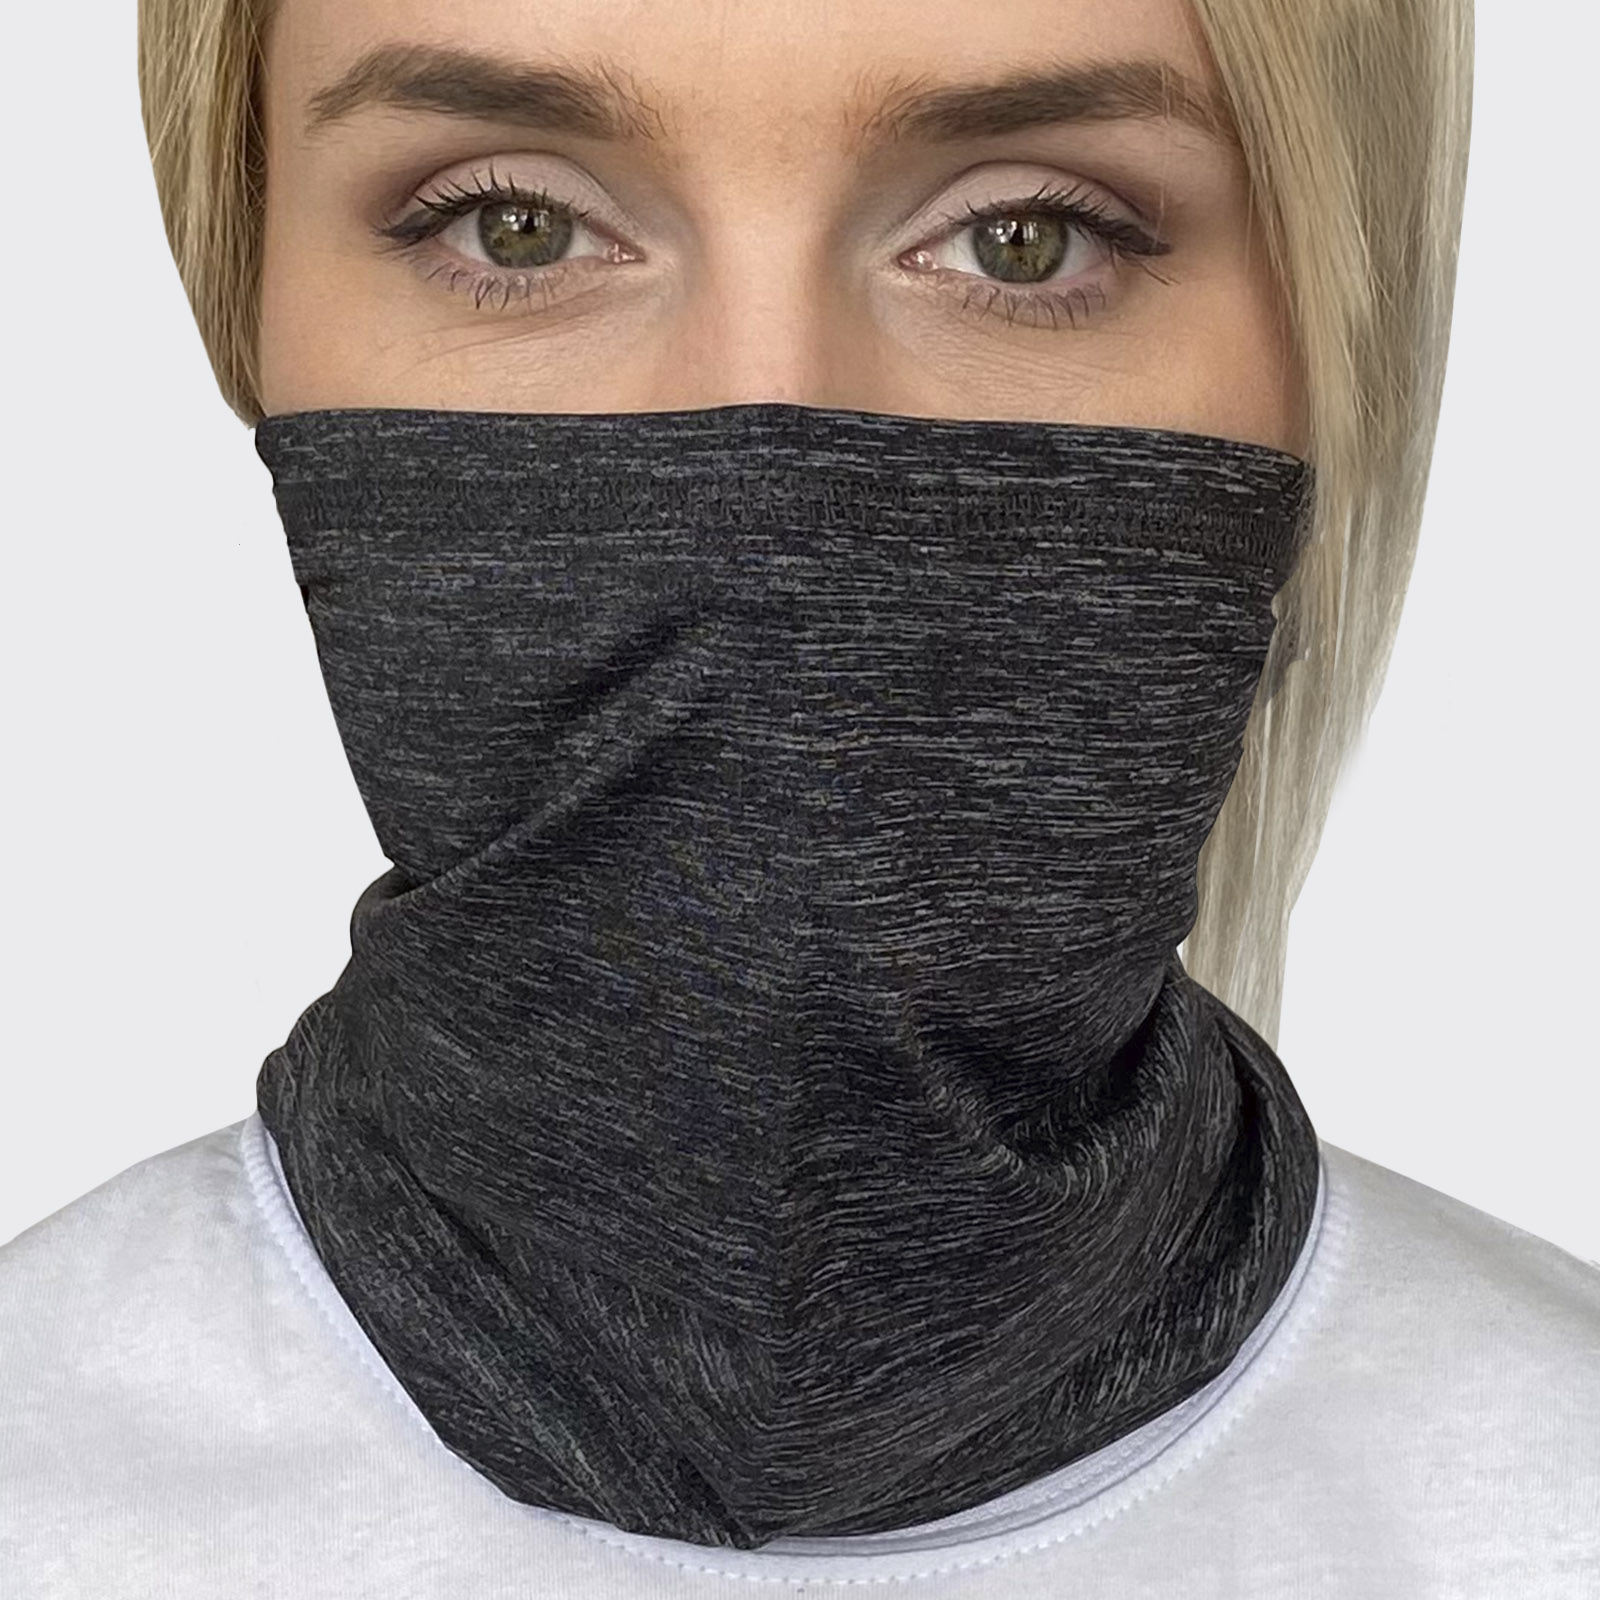 Купить маску шарф в интернет магазине